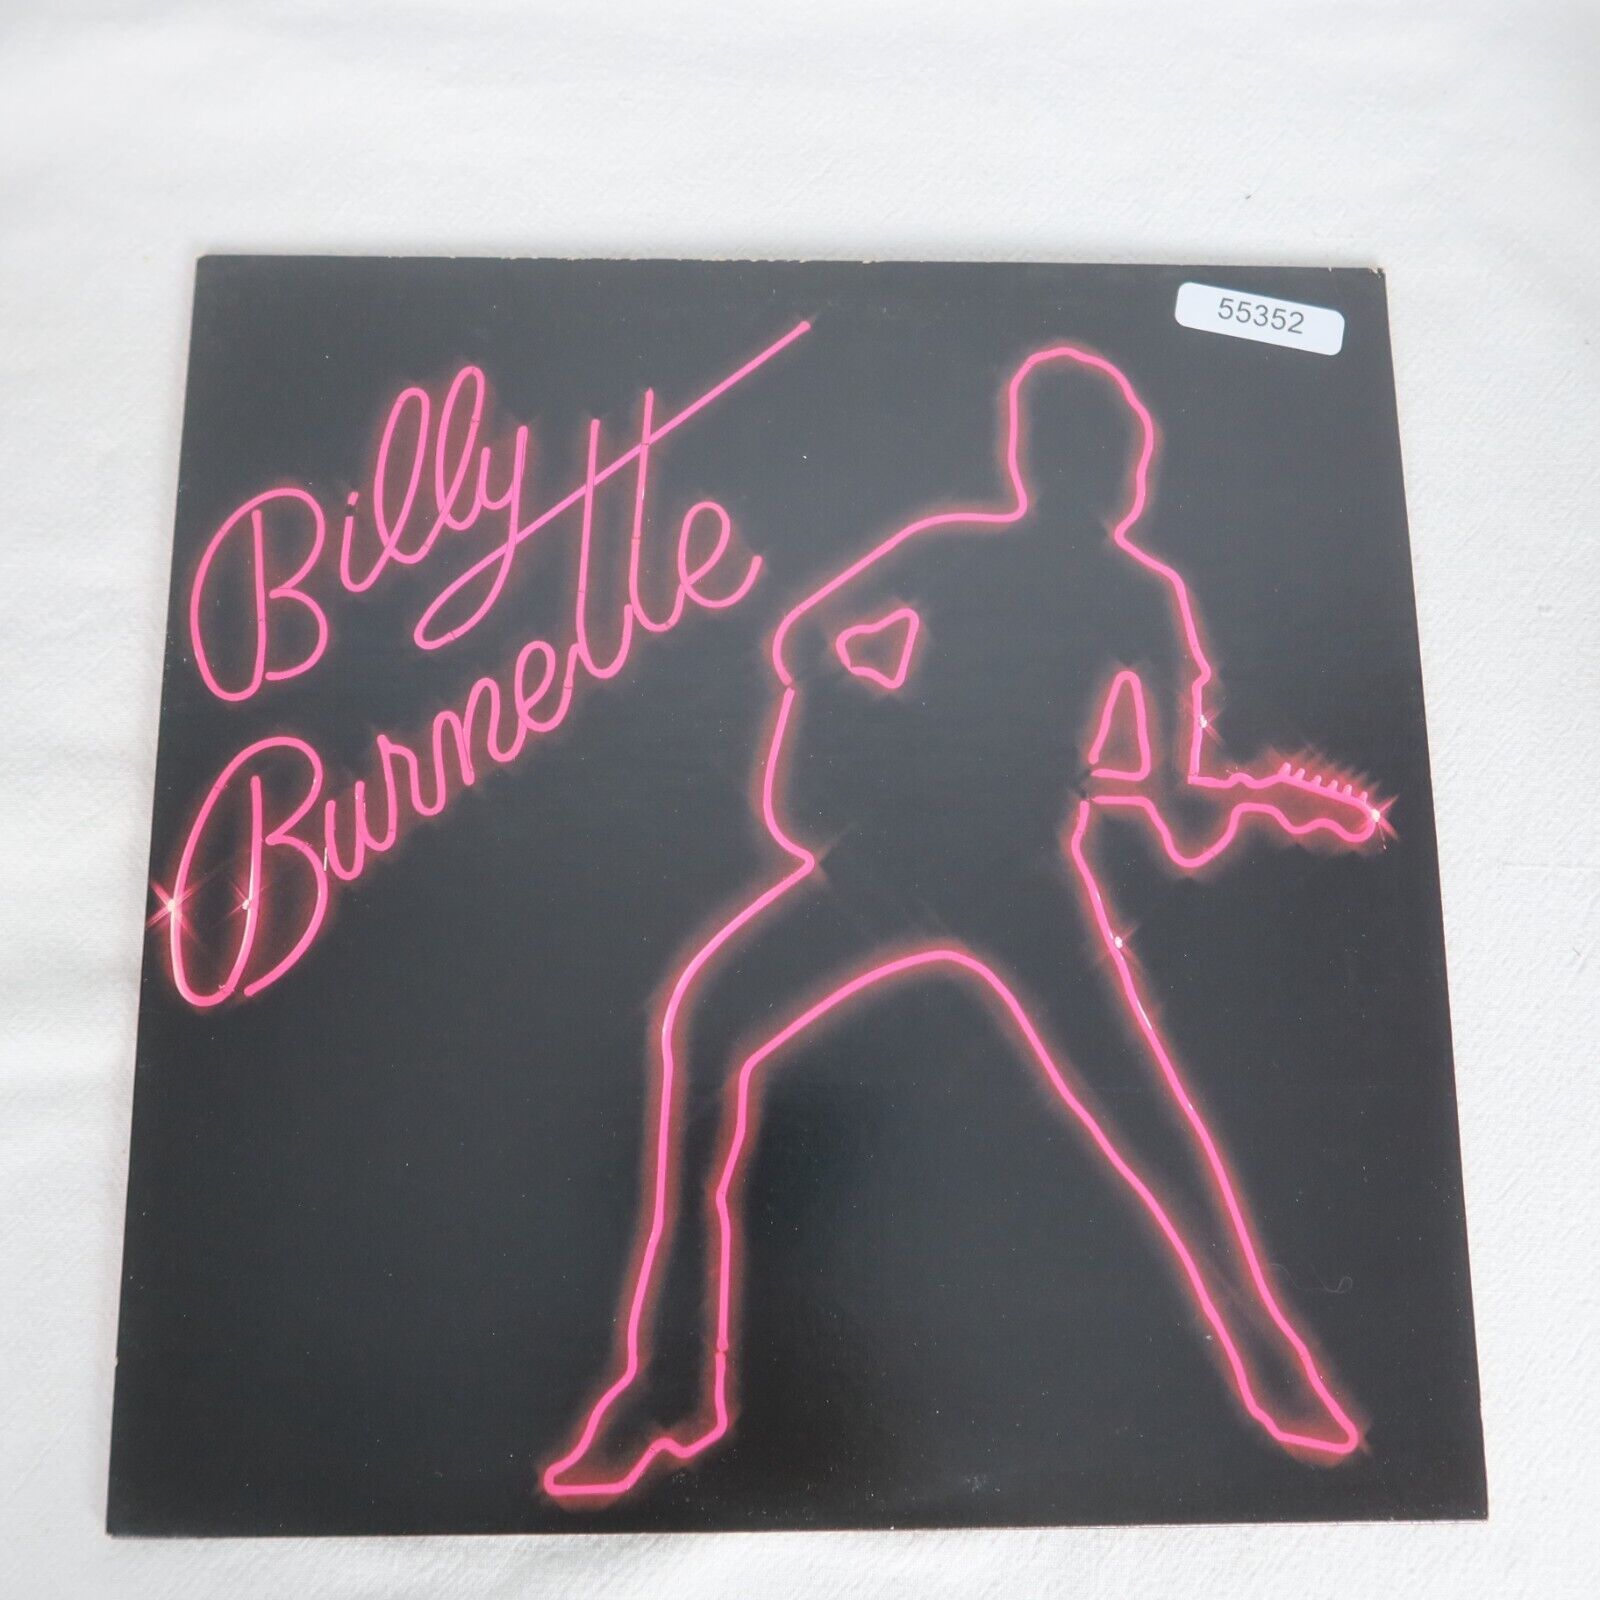 Billy Burnette Self Titled LP Vinyl Record Album